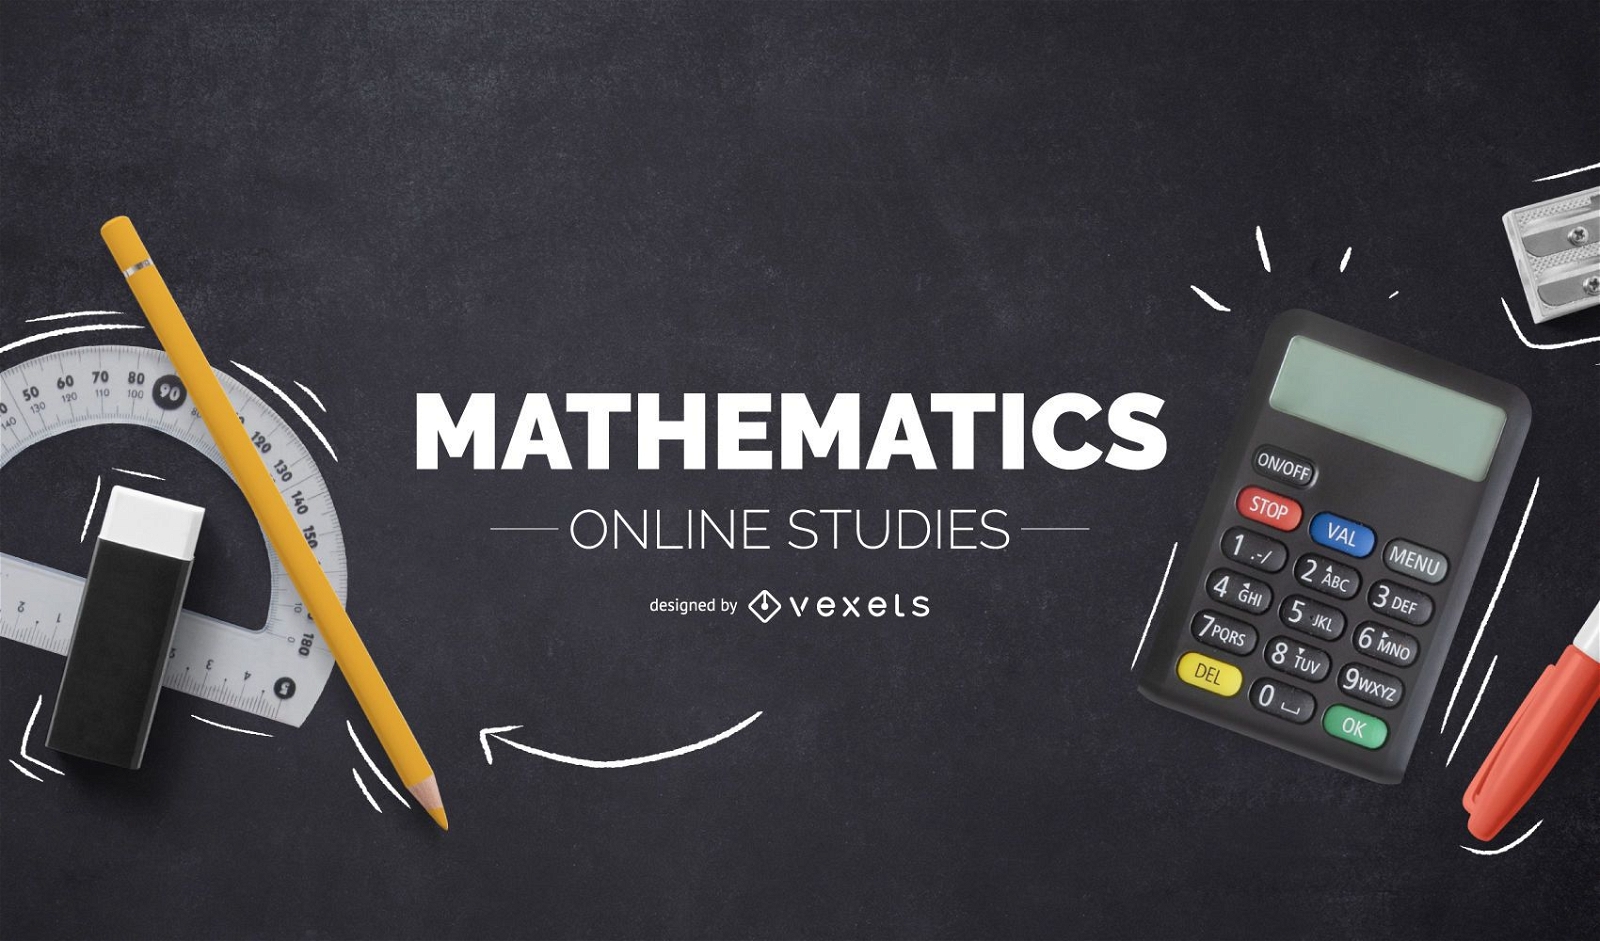 Mathematics online studies cover design